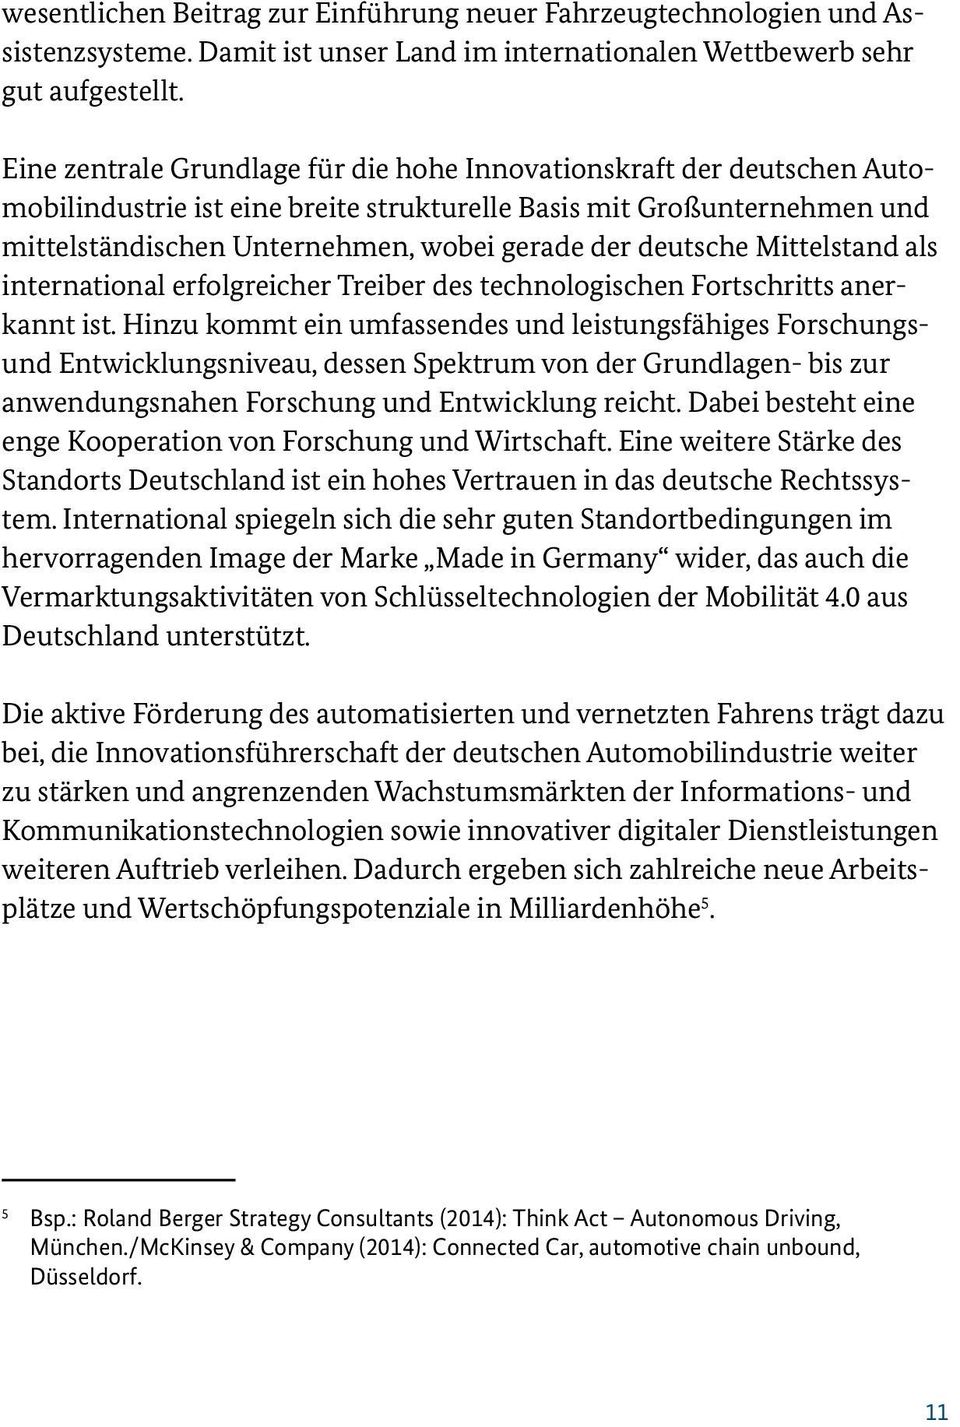 deutsche Mittelstand als international erfolgreicher Treiber des technologischen Fortschritts anerkannt ist.